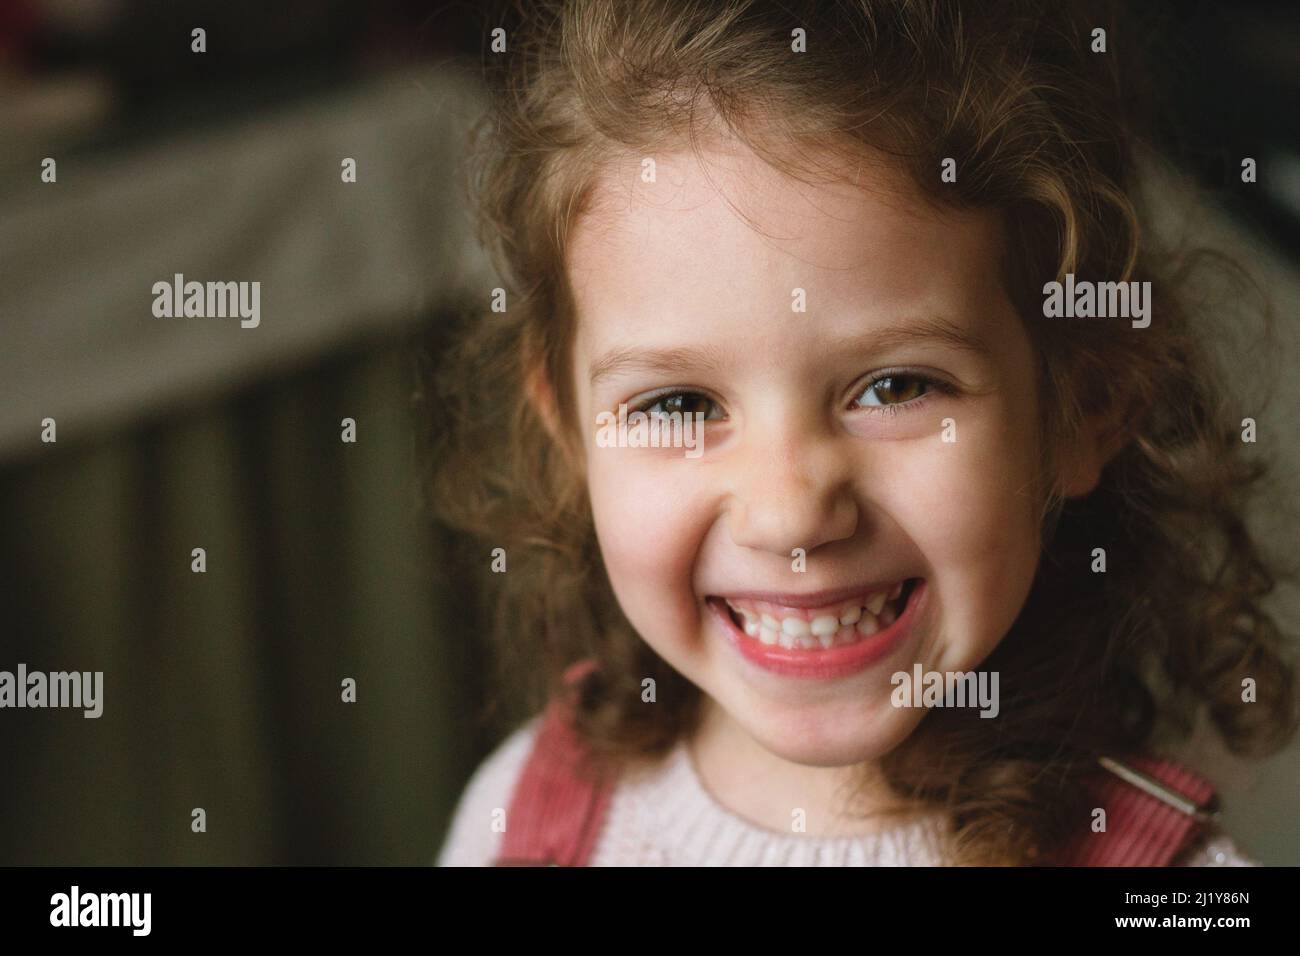 Nahaufnahme eines niedlichen kleinen weißen kaukasischen Mädchens mit einem frechen Lächeln und Ausdruck auf ihrem Gesicht, das direkt auf die Kamera blickt Stockfoto